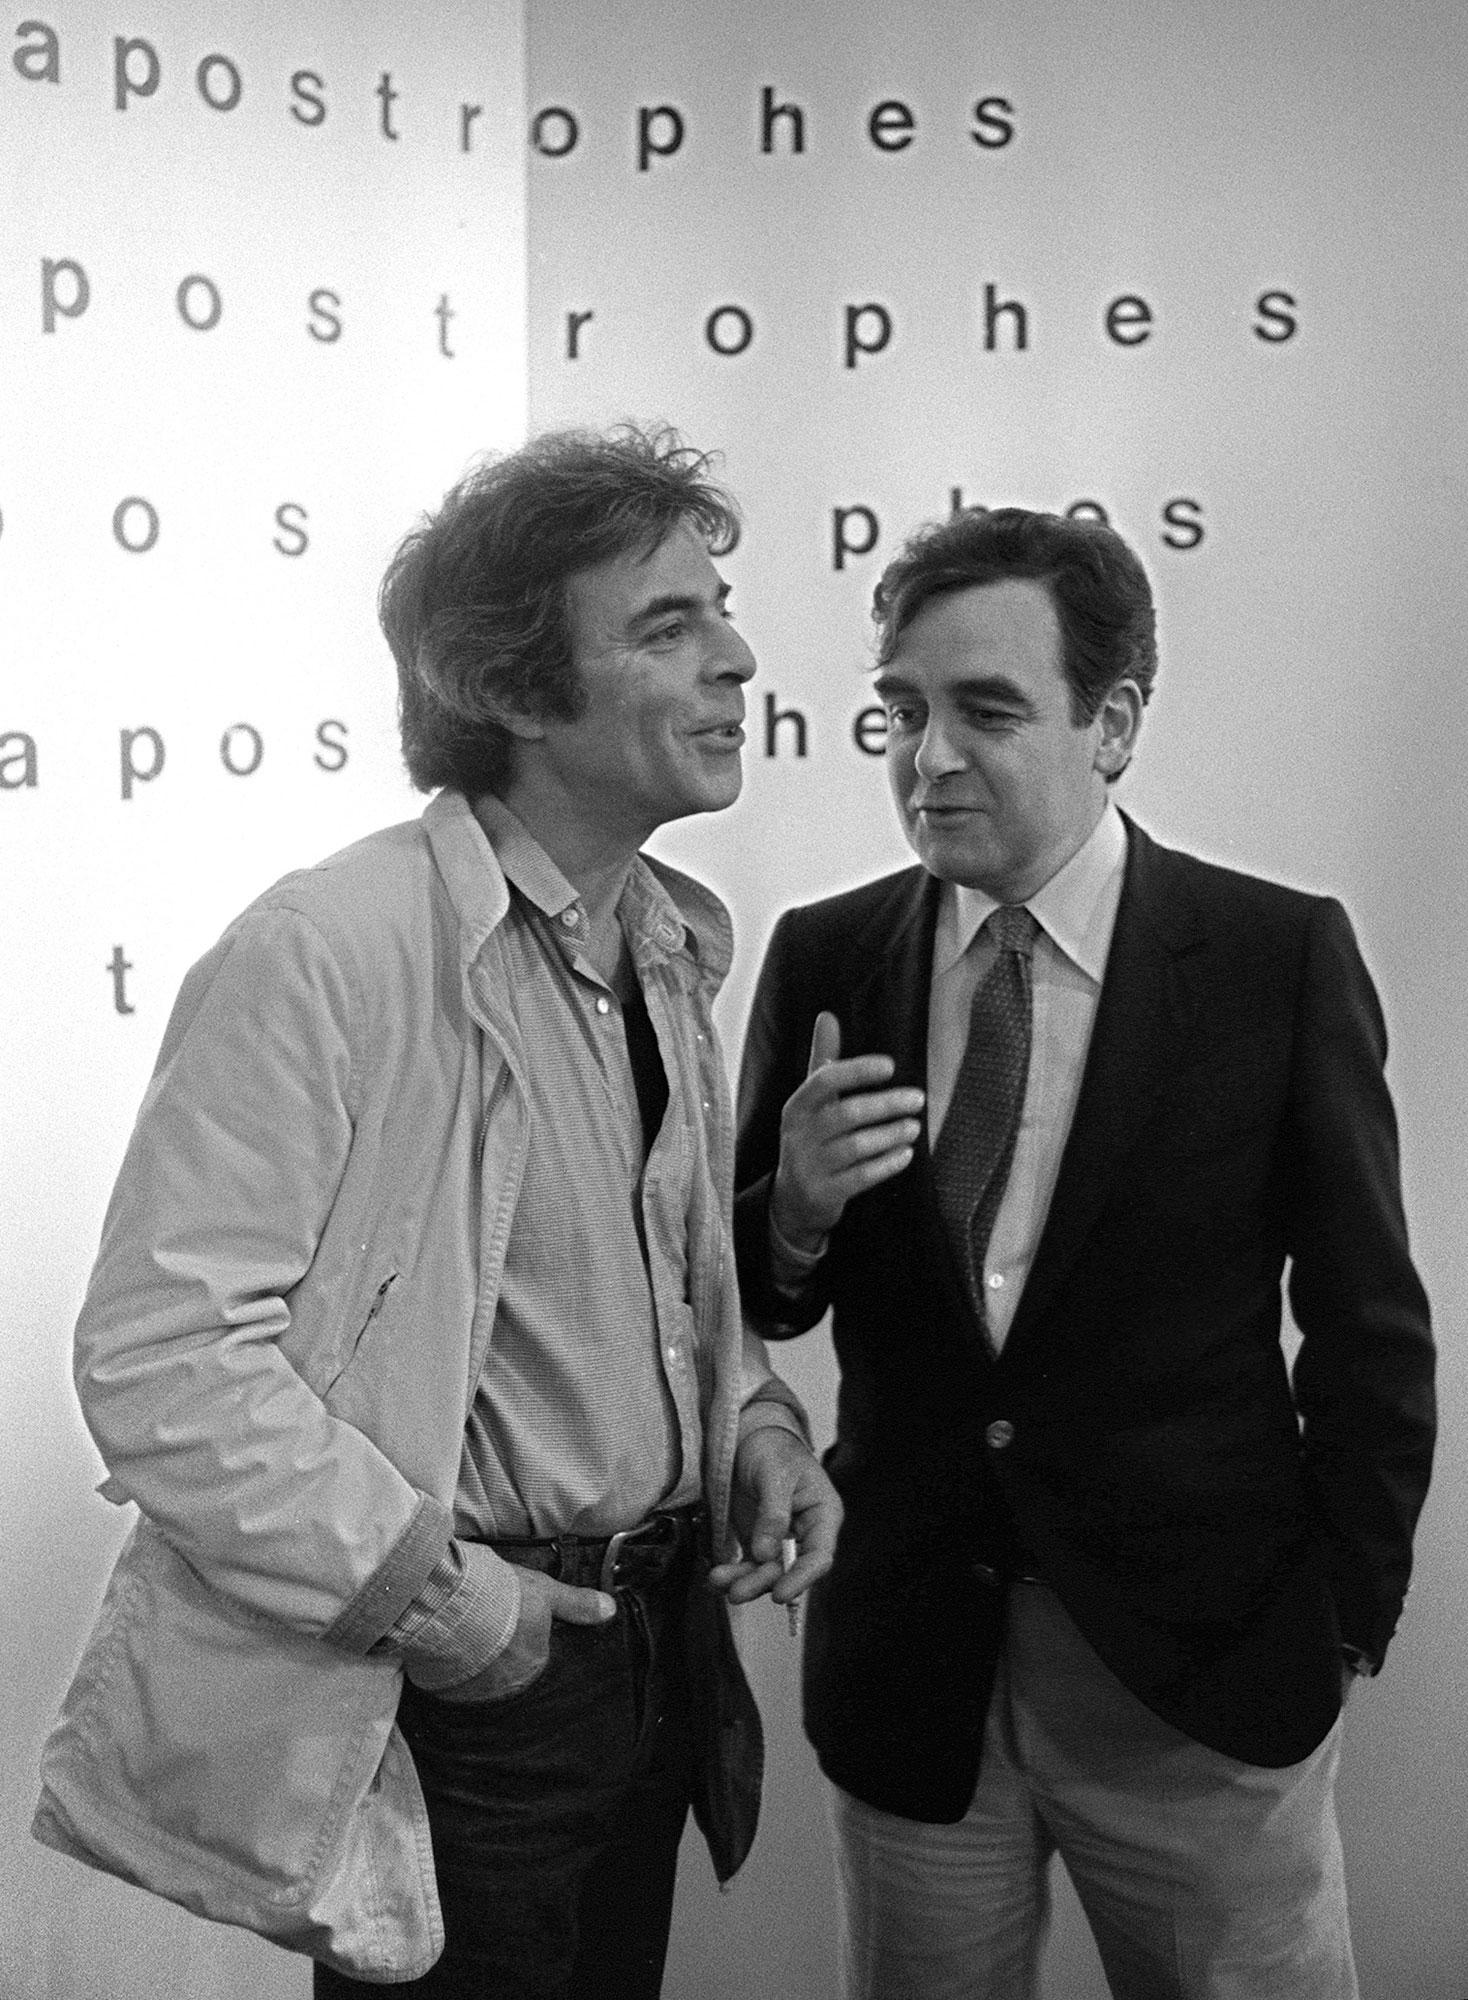 Bernard Pivot avec le neveu de Romain Gary, Paul Pavlowitch, qui devait personnifier l'écrivain Emile Ajar, le 3 juillet 1981 sur le plateau d'"Apostrophes". [AFP - Georges Gobet]